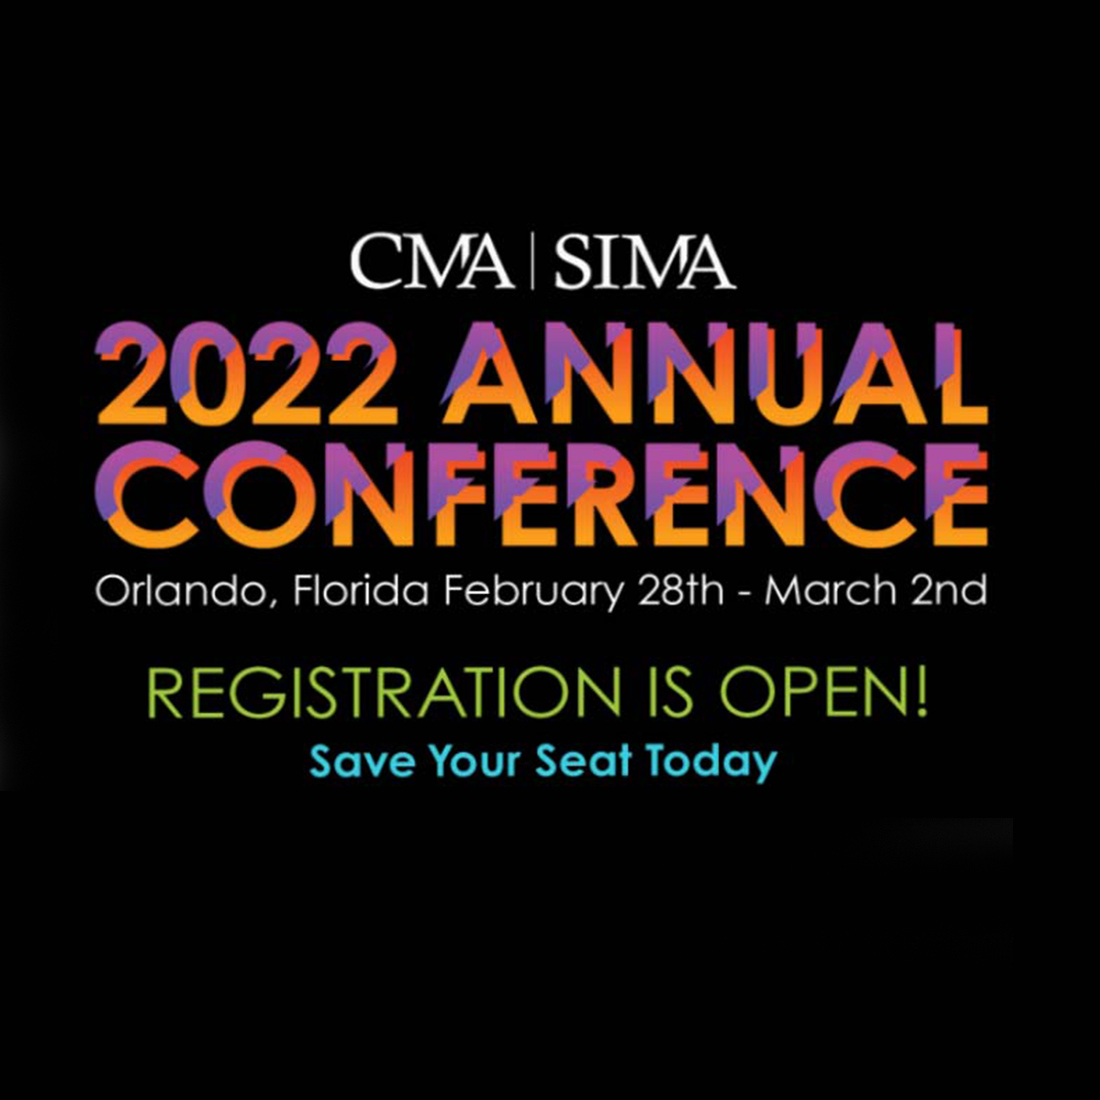 CMA/SIMA Annual Conference C+R